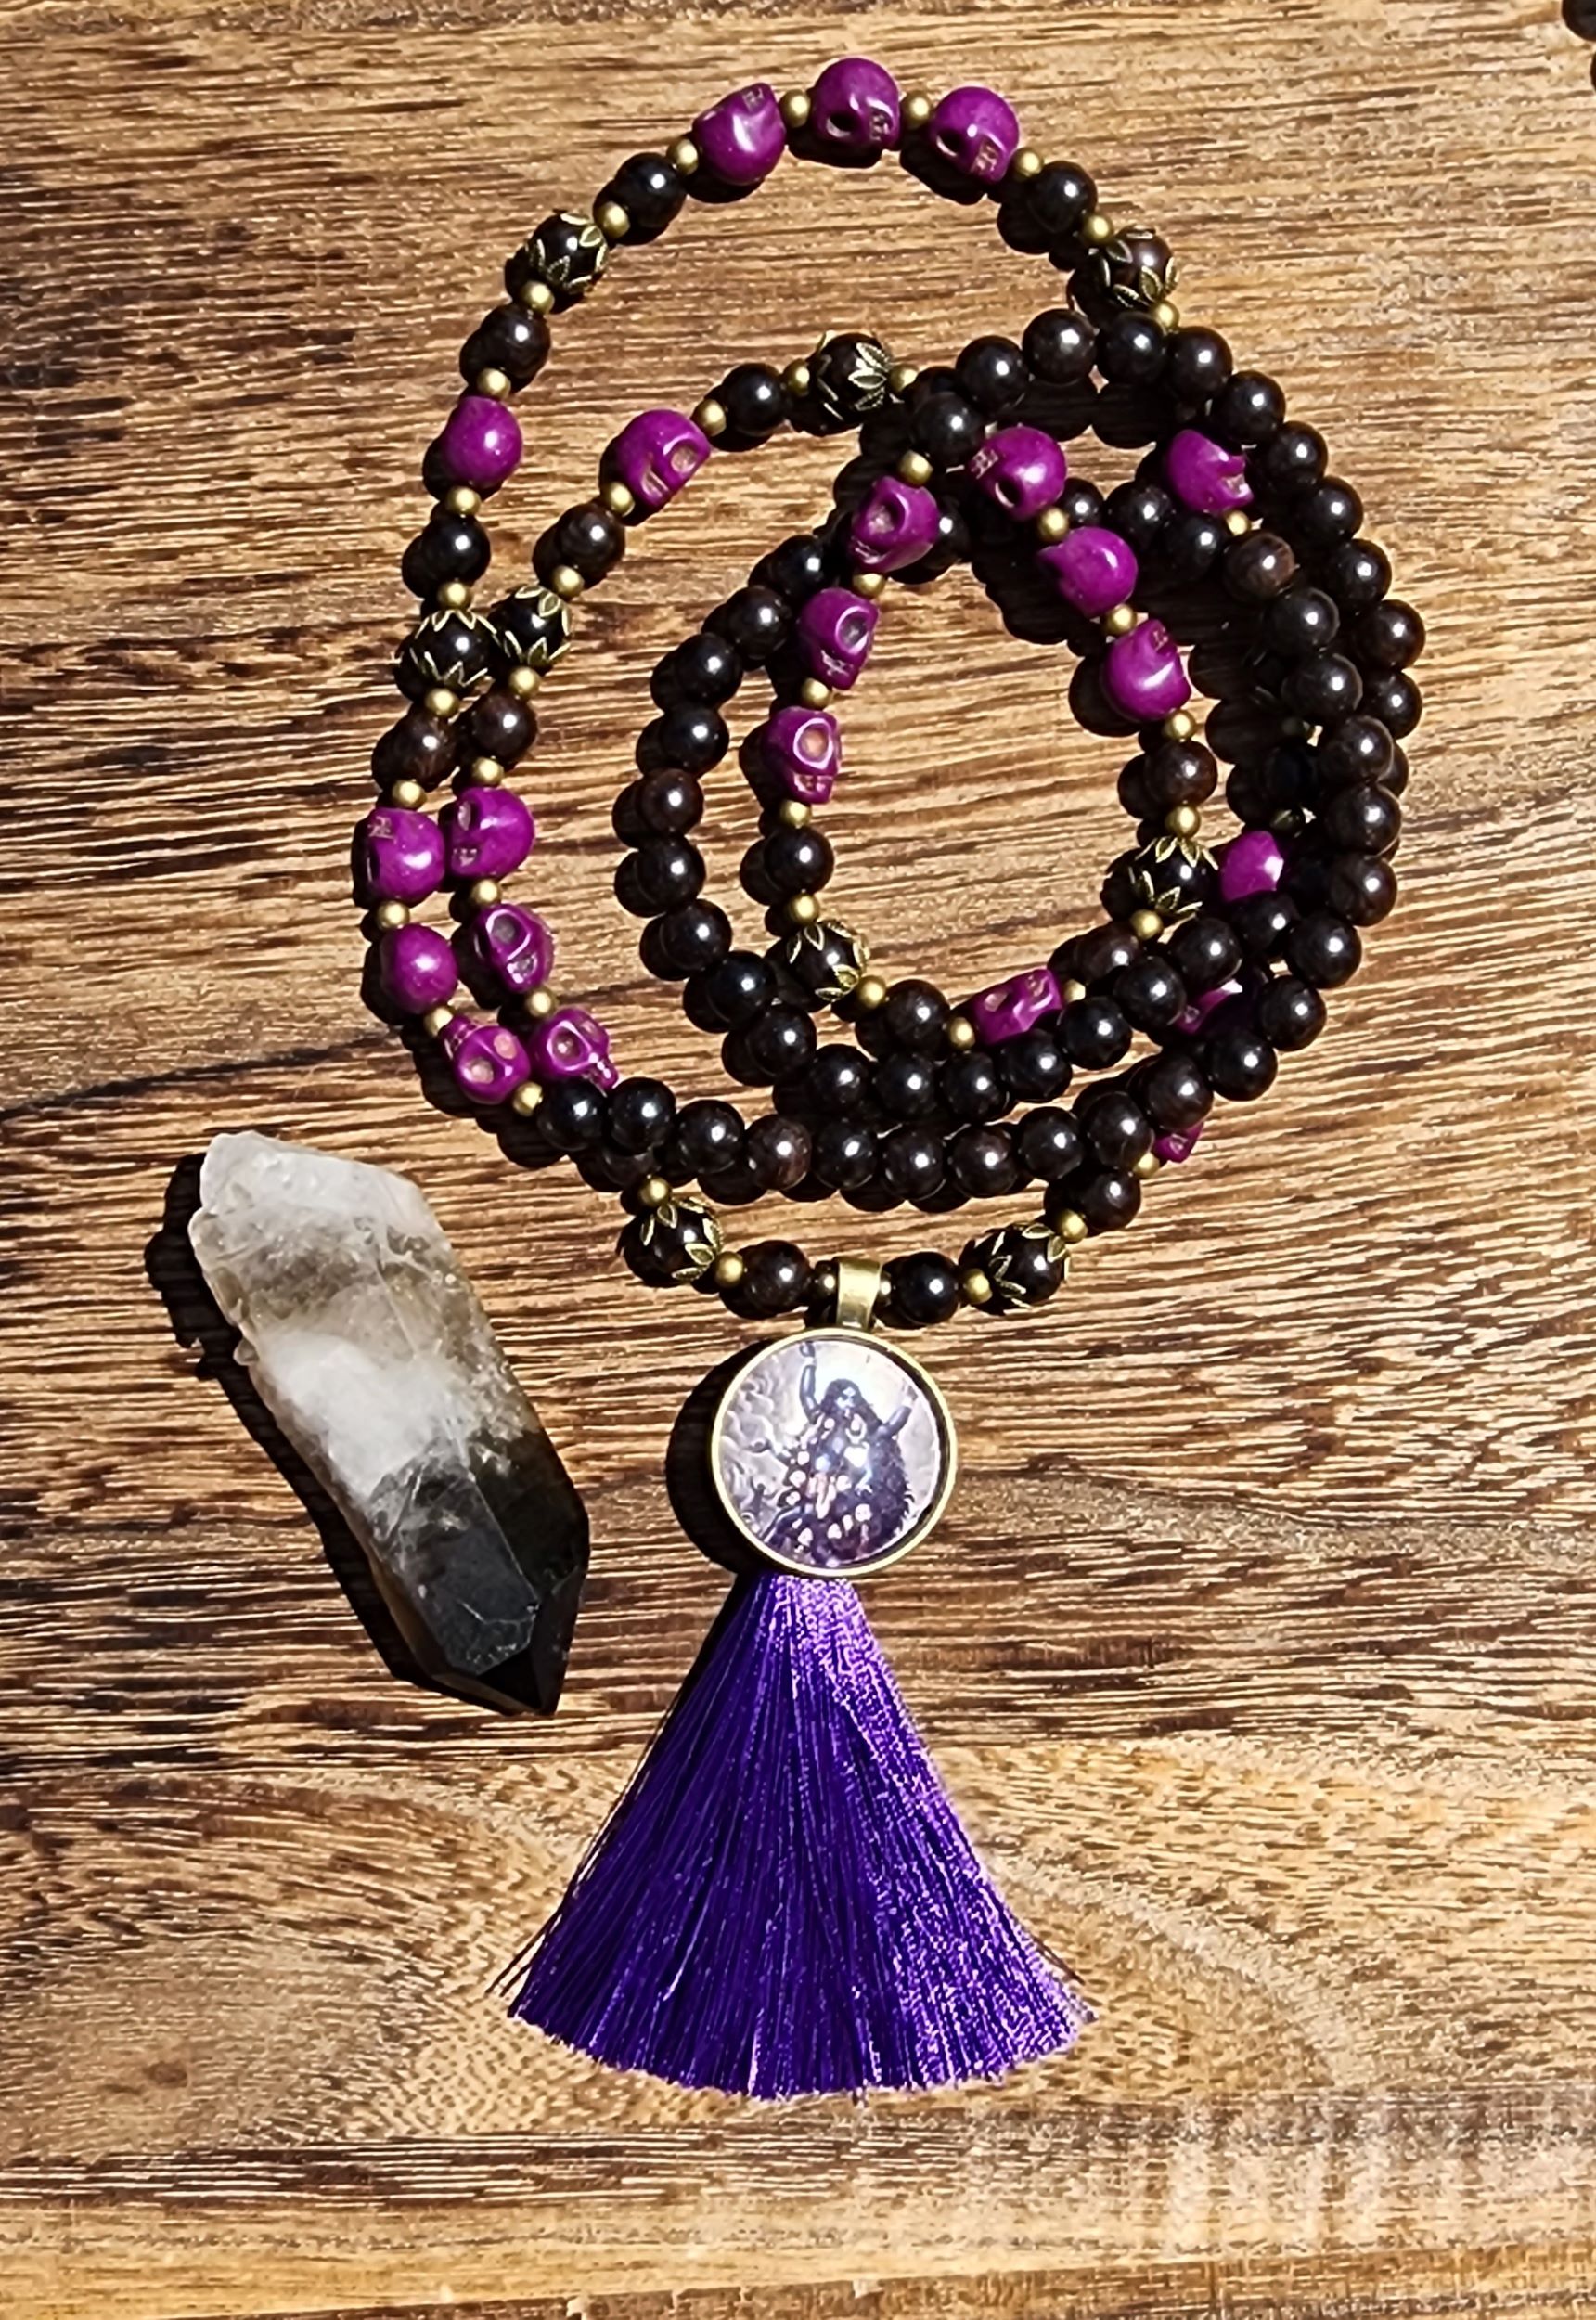 Kali Ma Mala featuring ebony wood, purple skulls, and purple tassel